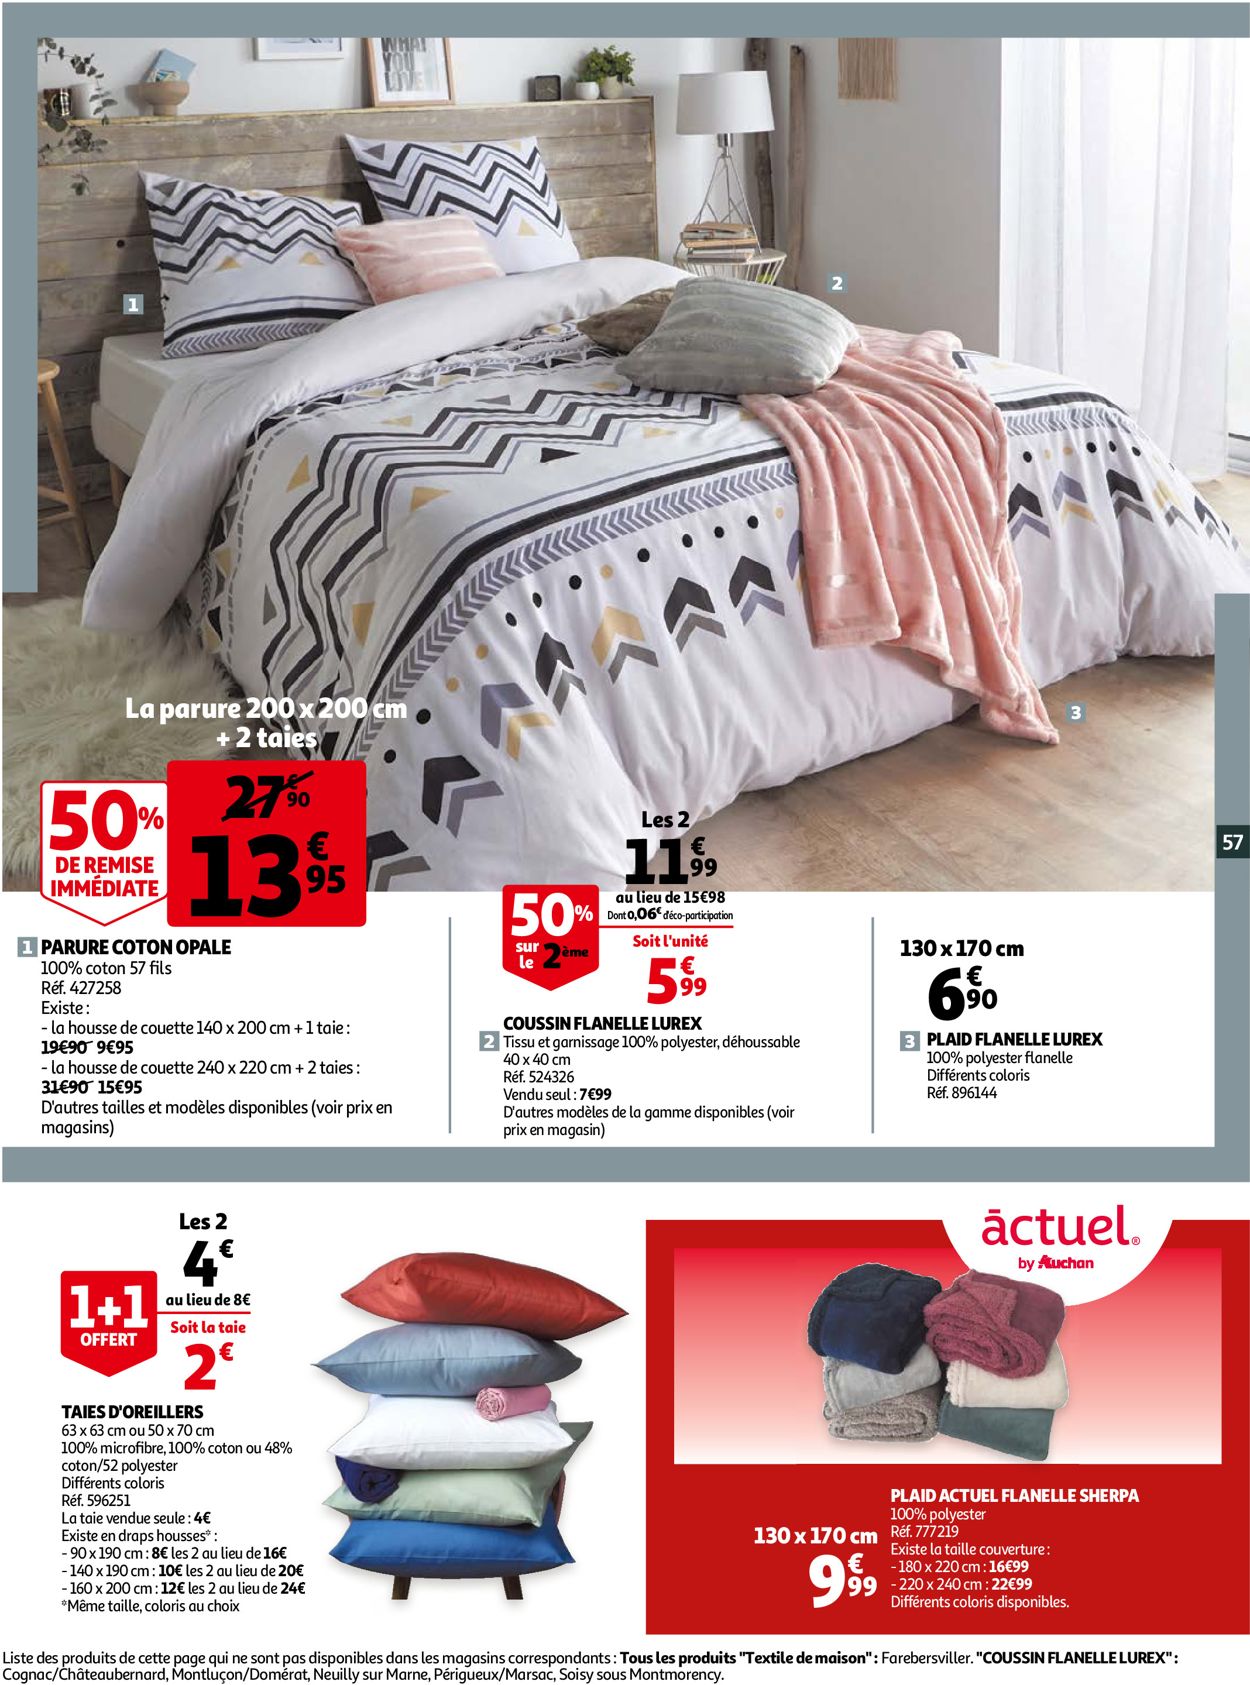 Auchan Catalogue du 14.10.2020